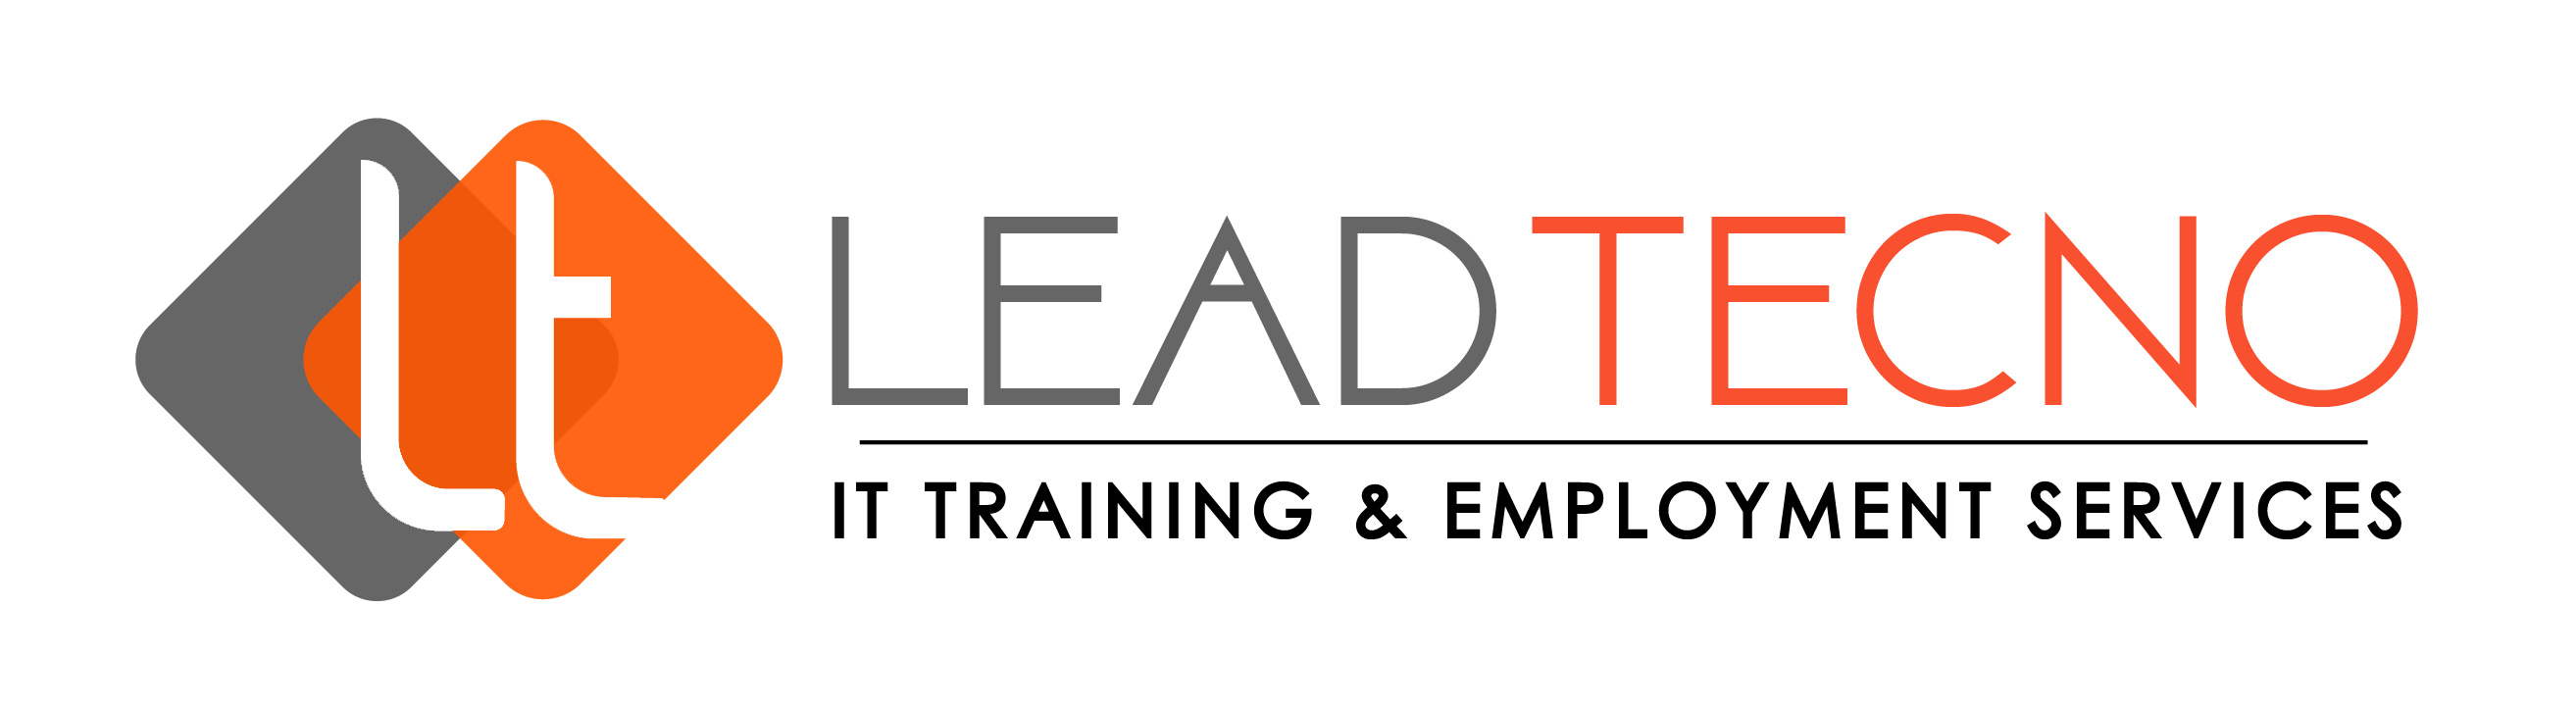 Lead Tecno Logo